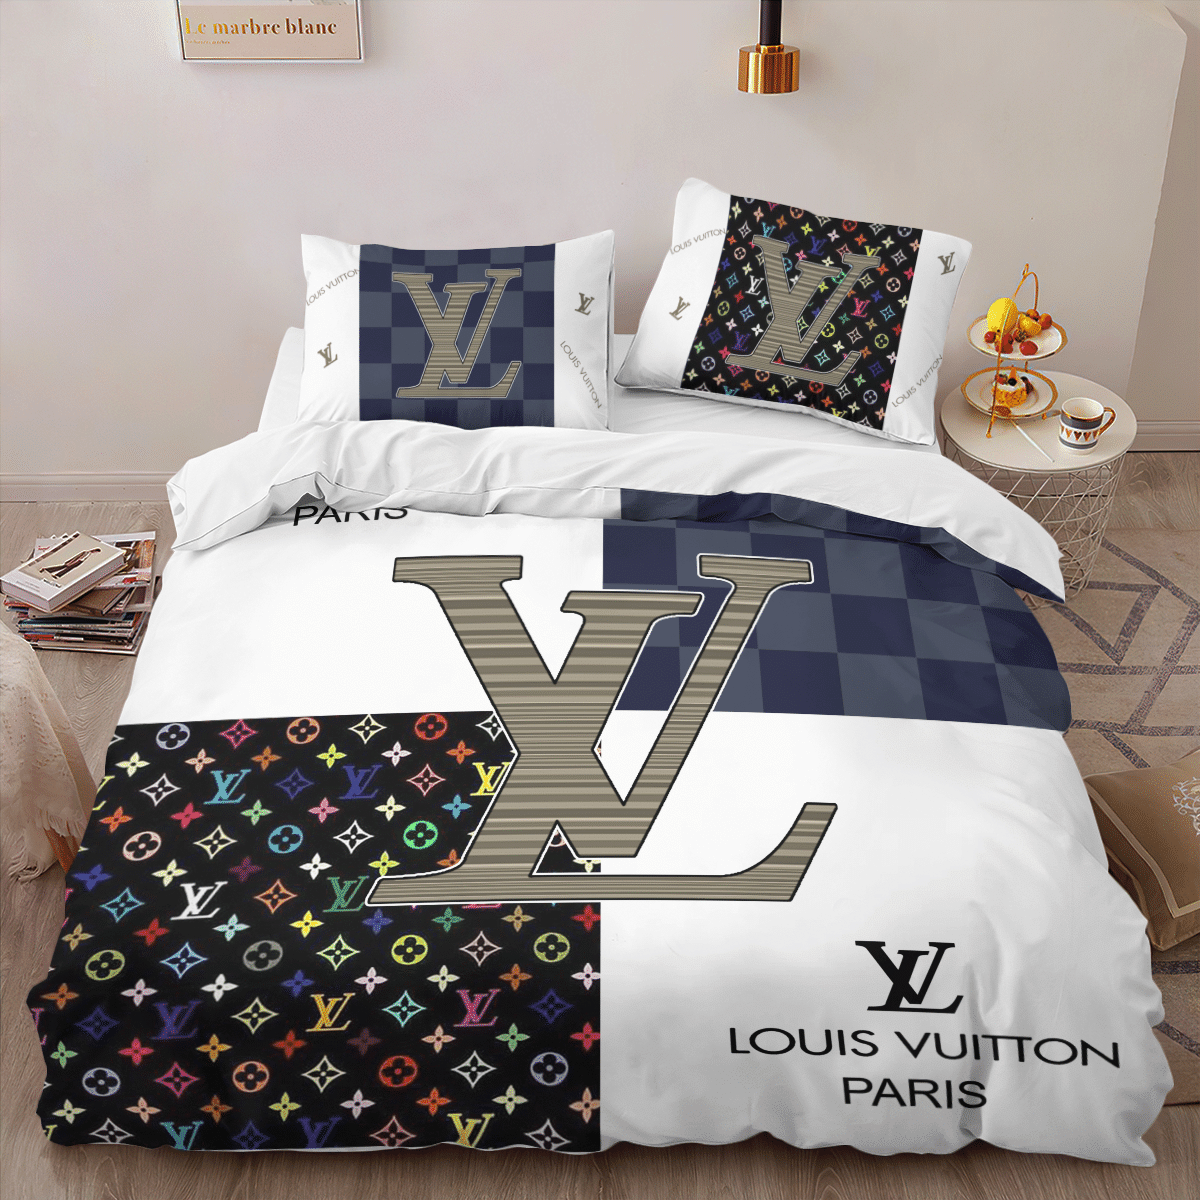 Louis Vuitton Bedding Sets 19